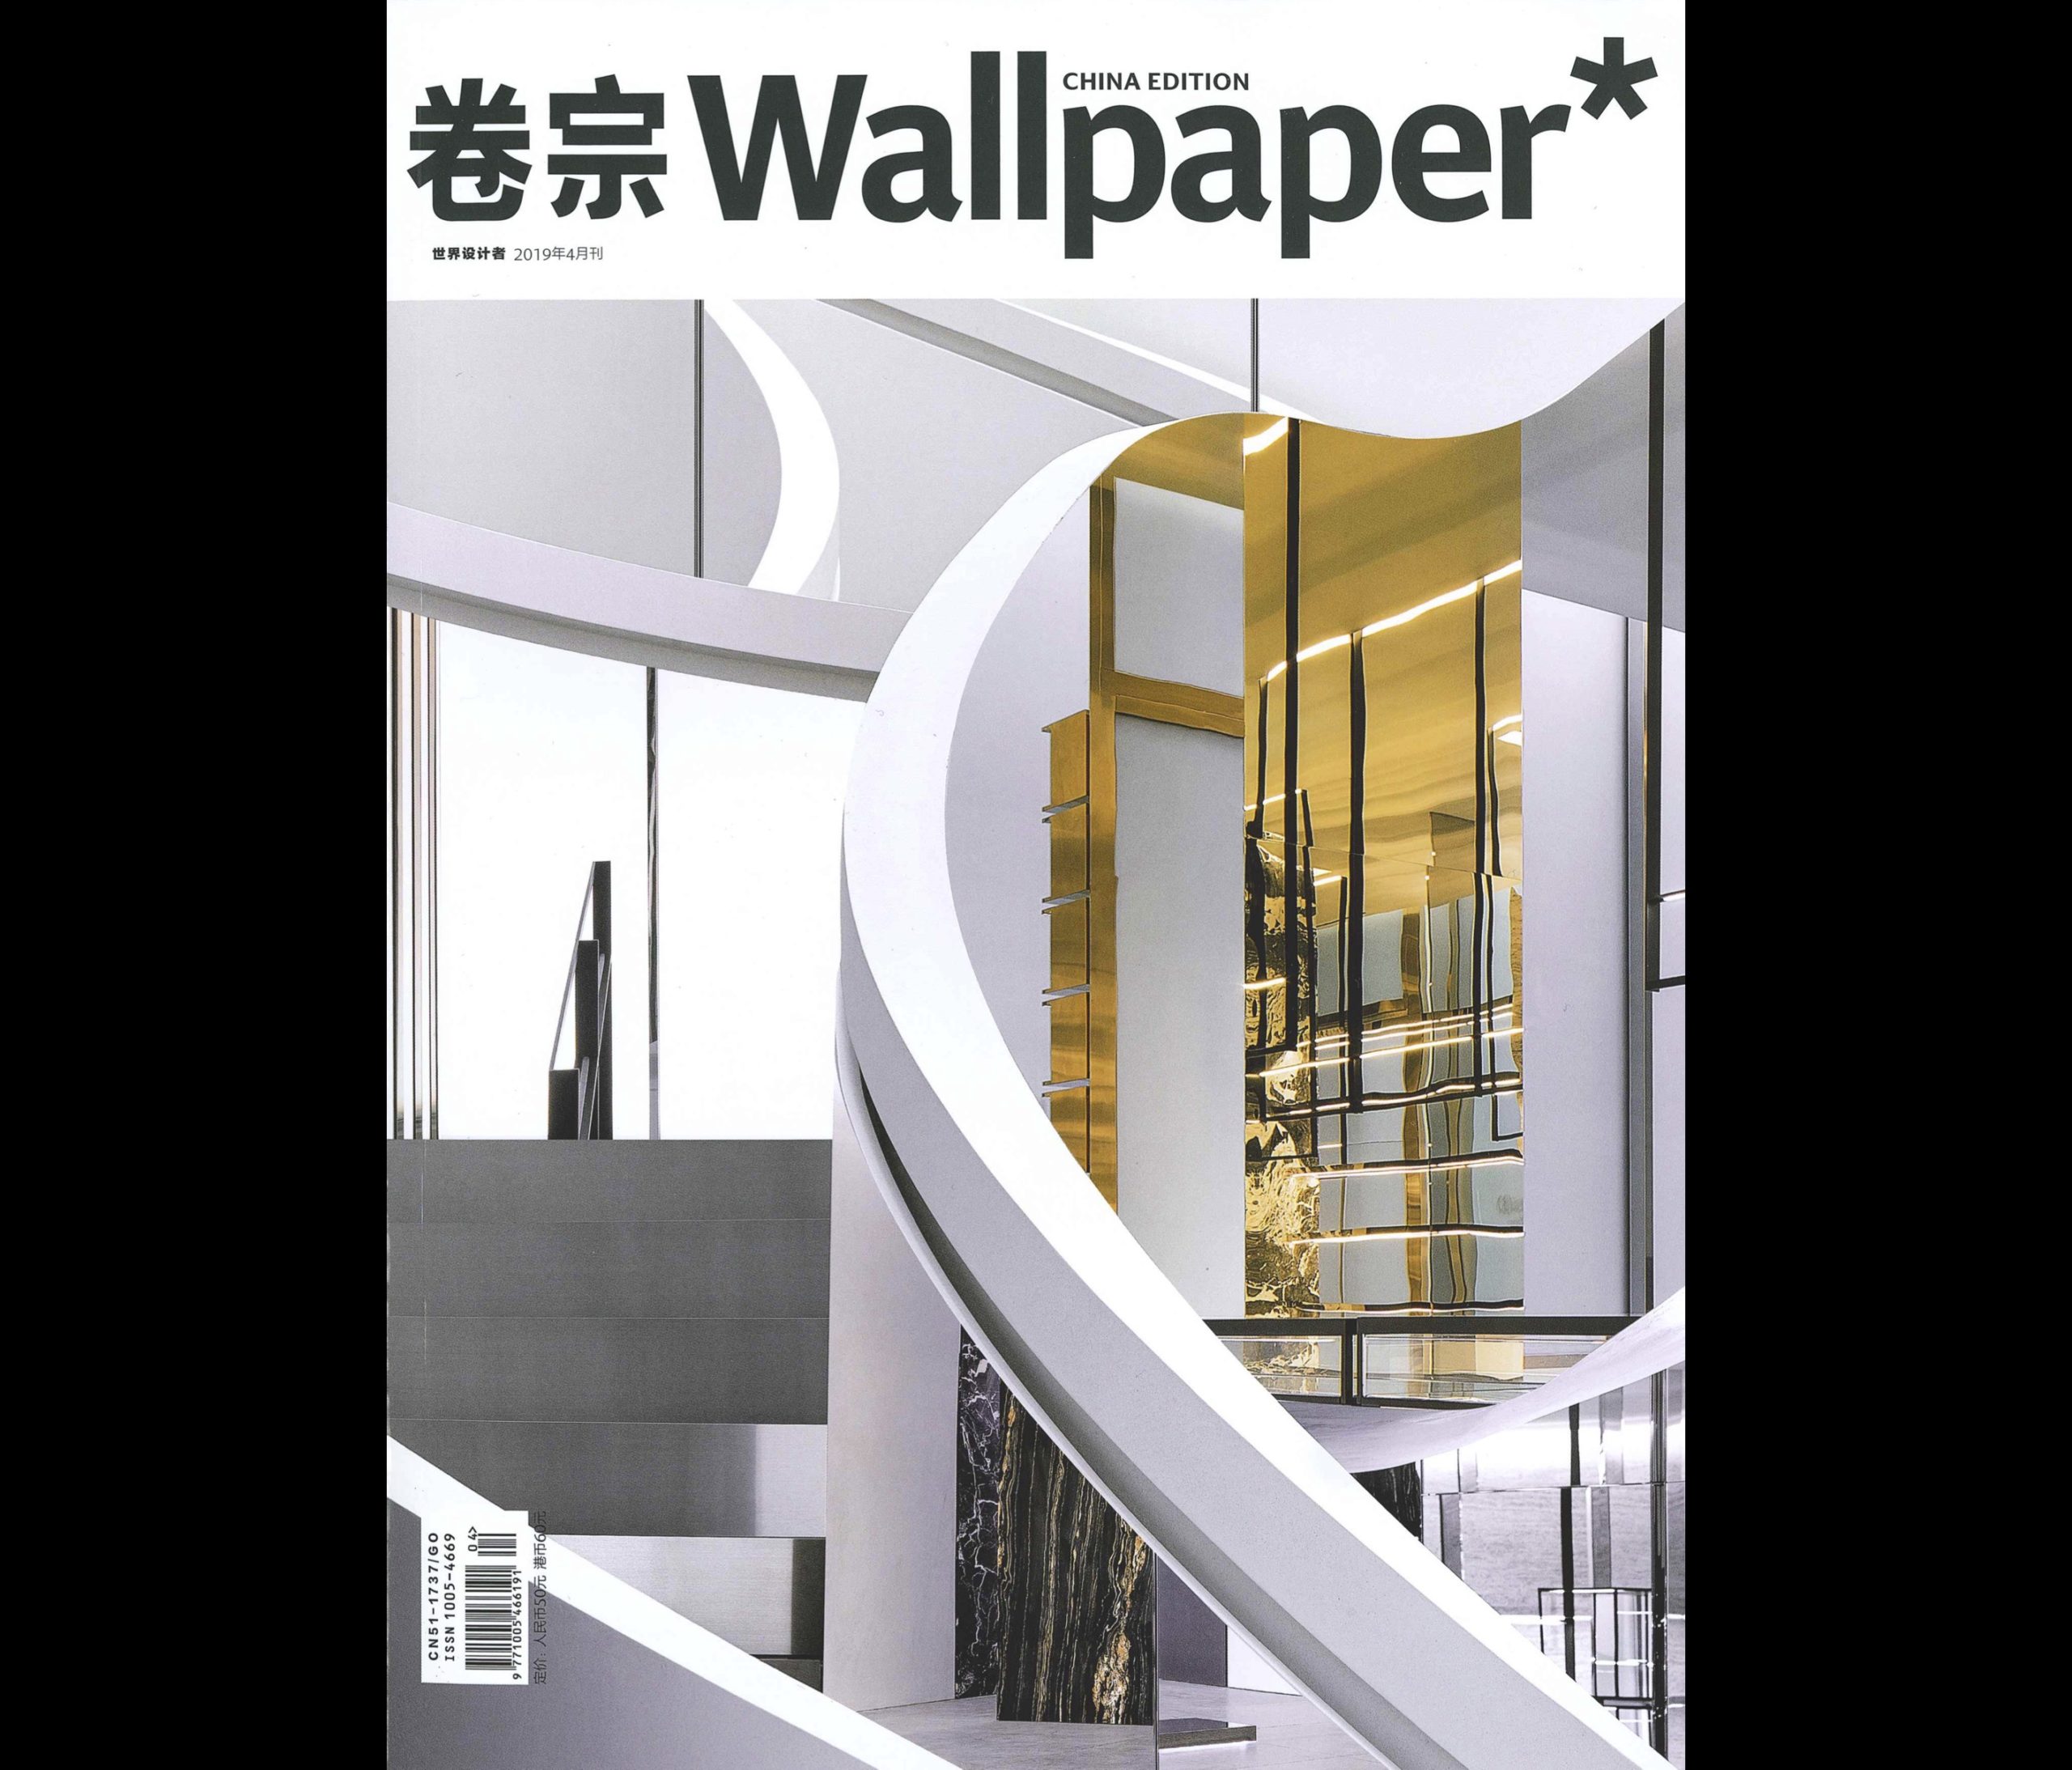 MAGAZINE】『Wallpaper CHINA EDITION』に【HIPANDA JAPAN FLAGSHIP STORE】が紹介されました。  【HIPANDA JAPAN FLAGSHIP STORE】 is featured in 『Wallpaper CHINA EDITION』  MEDIA - HIPANDA